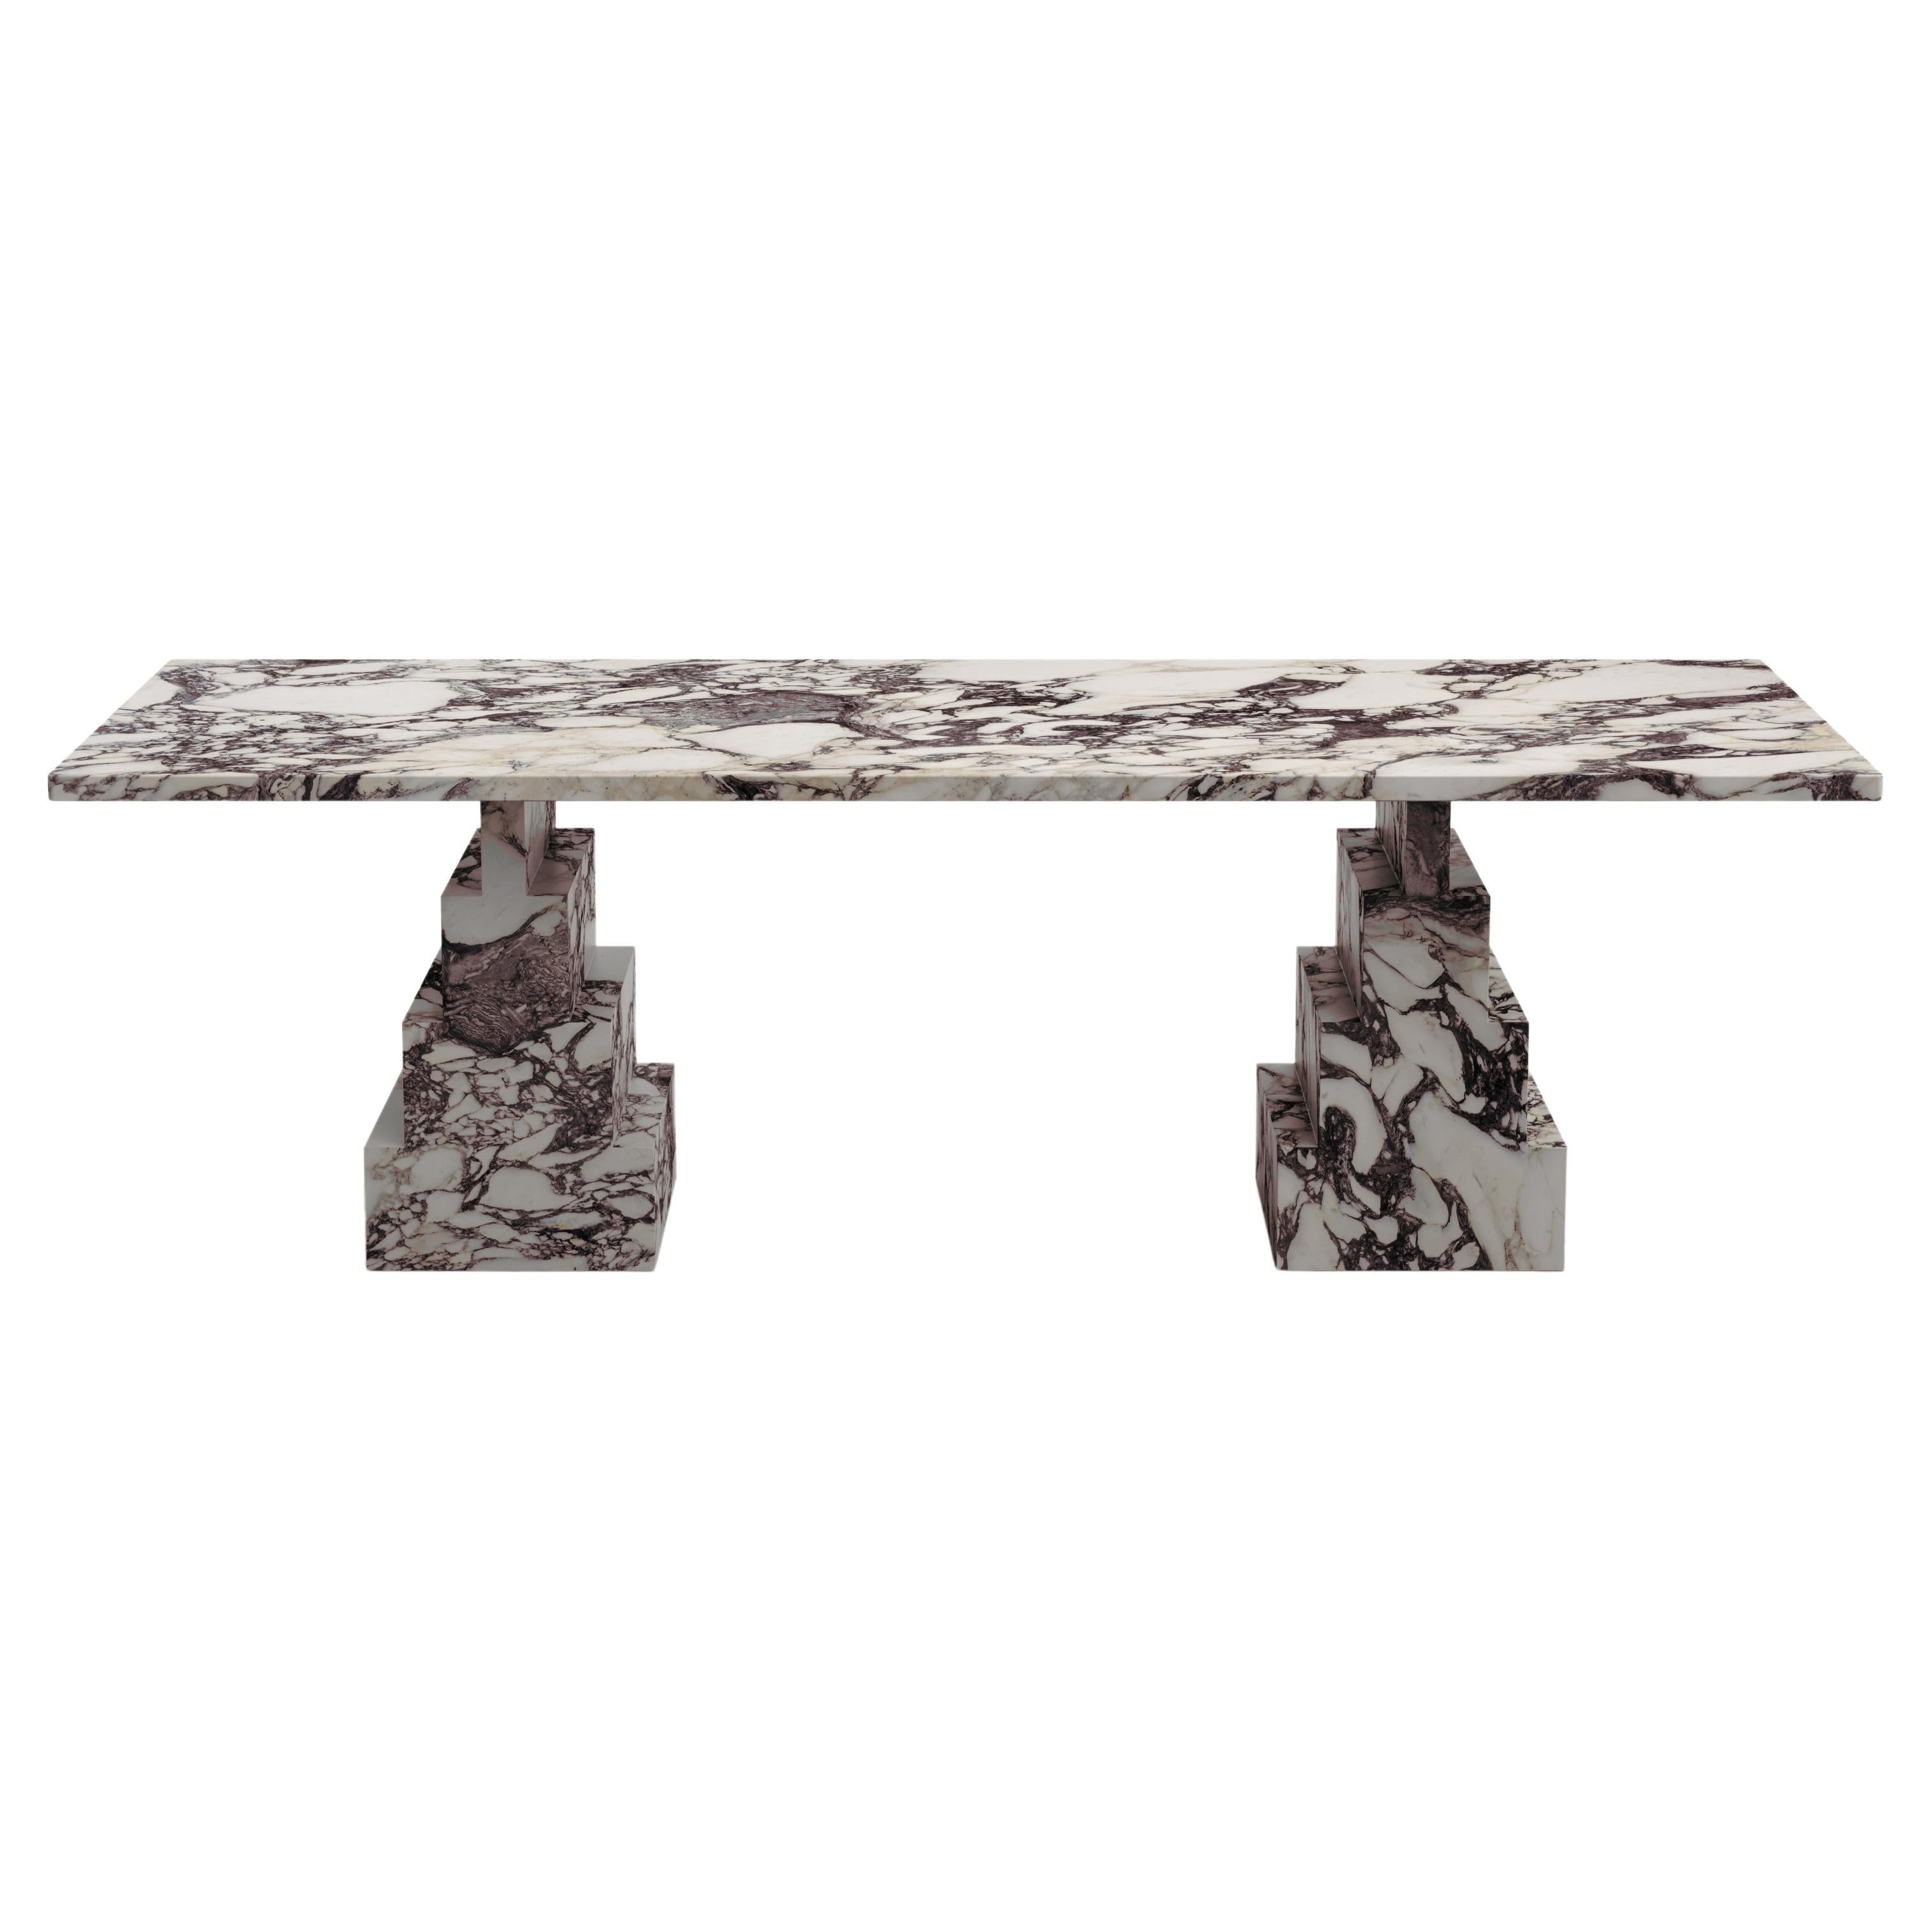 Table de salle à manger NORDST NIKO, marbre italien Calacatta, design moderne danois, nouveau